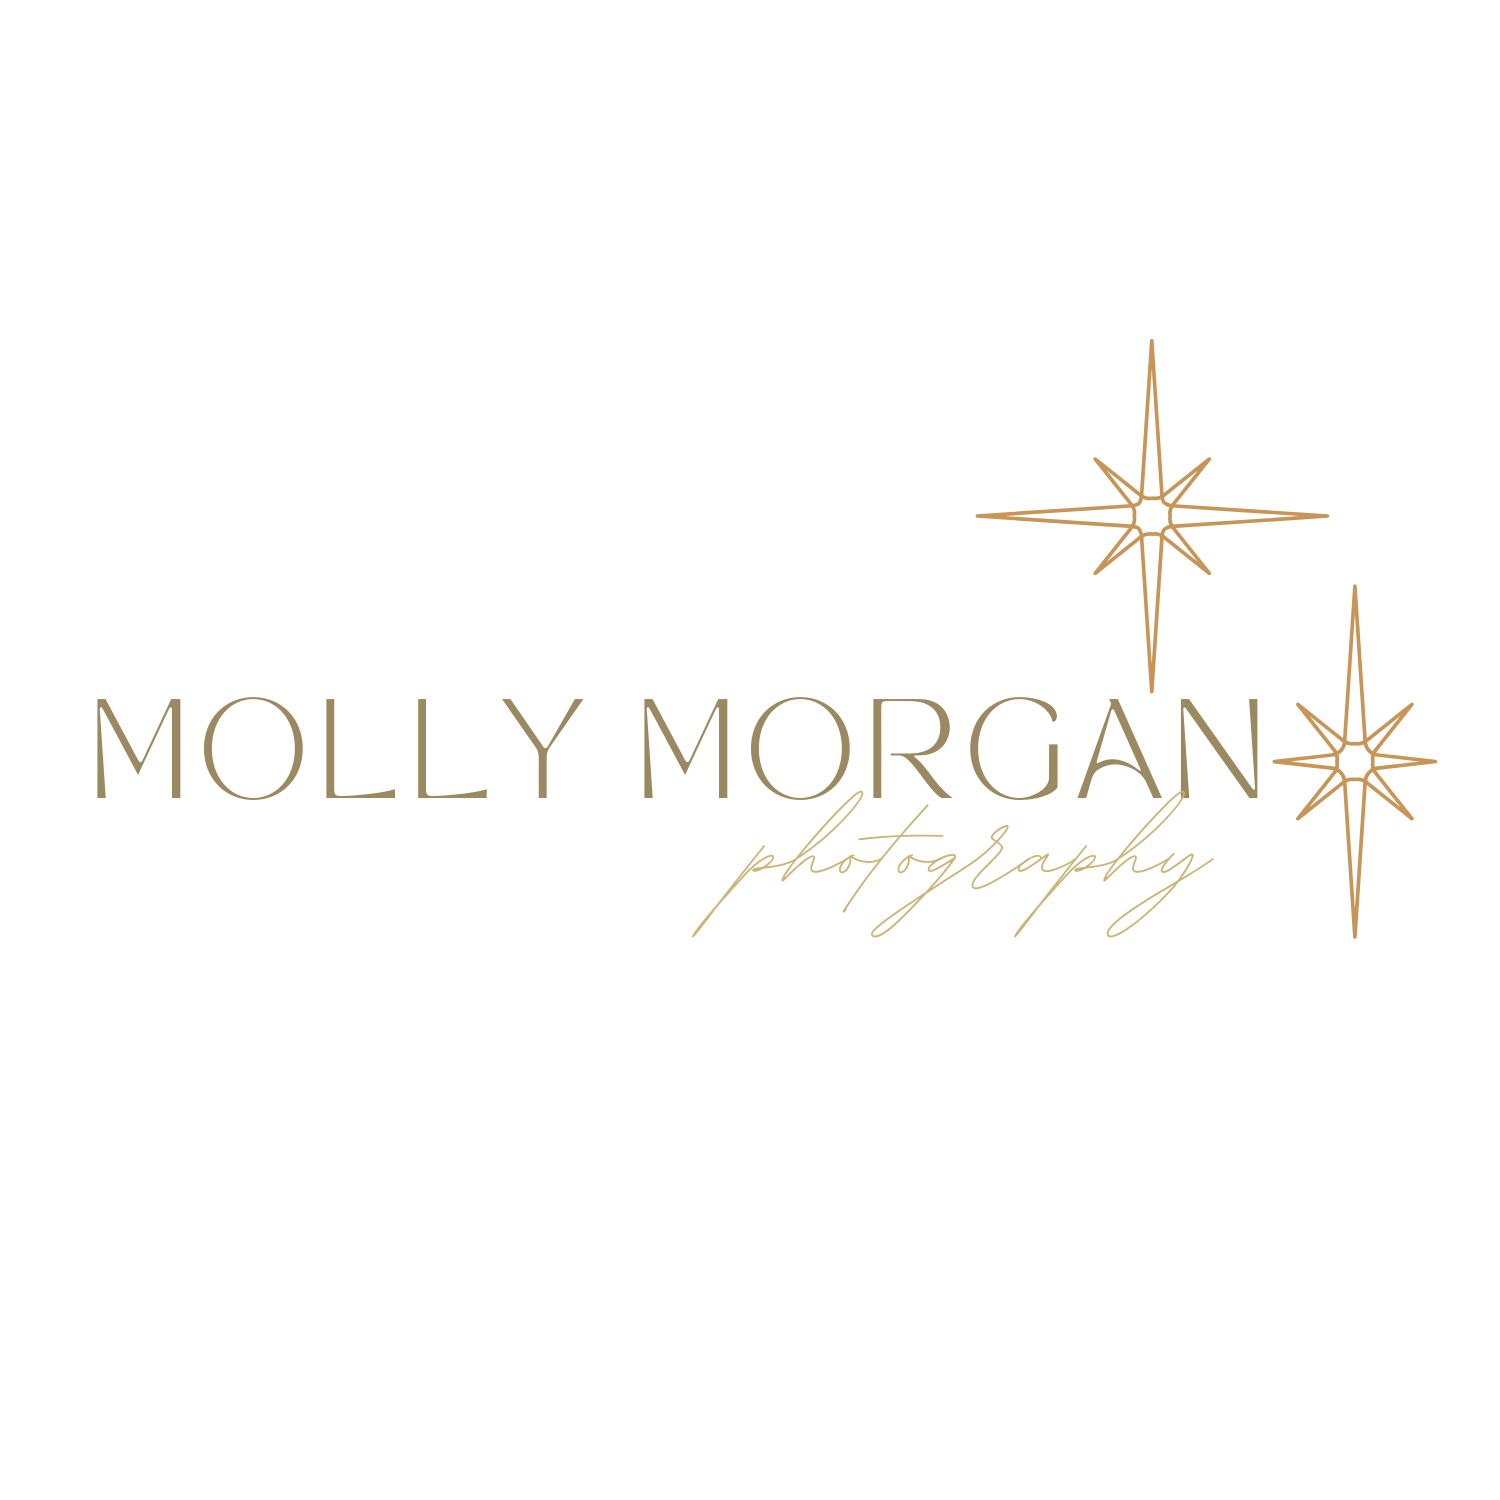 Molly Morgan Photography